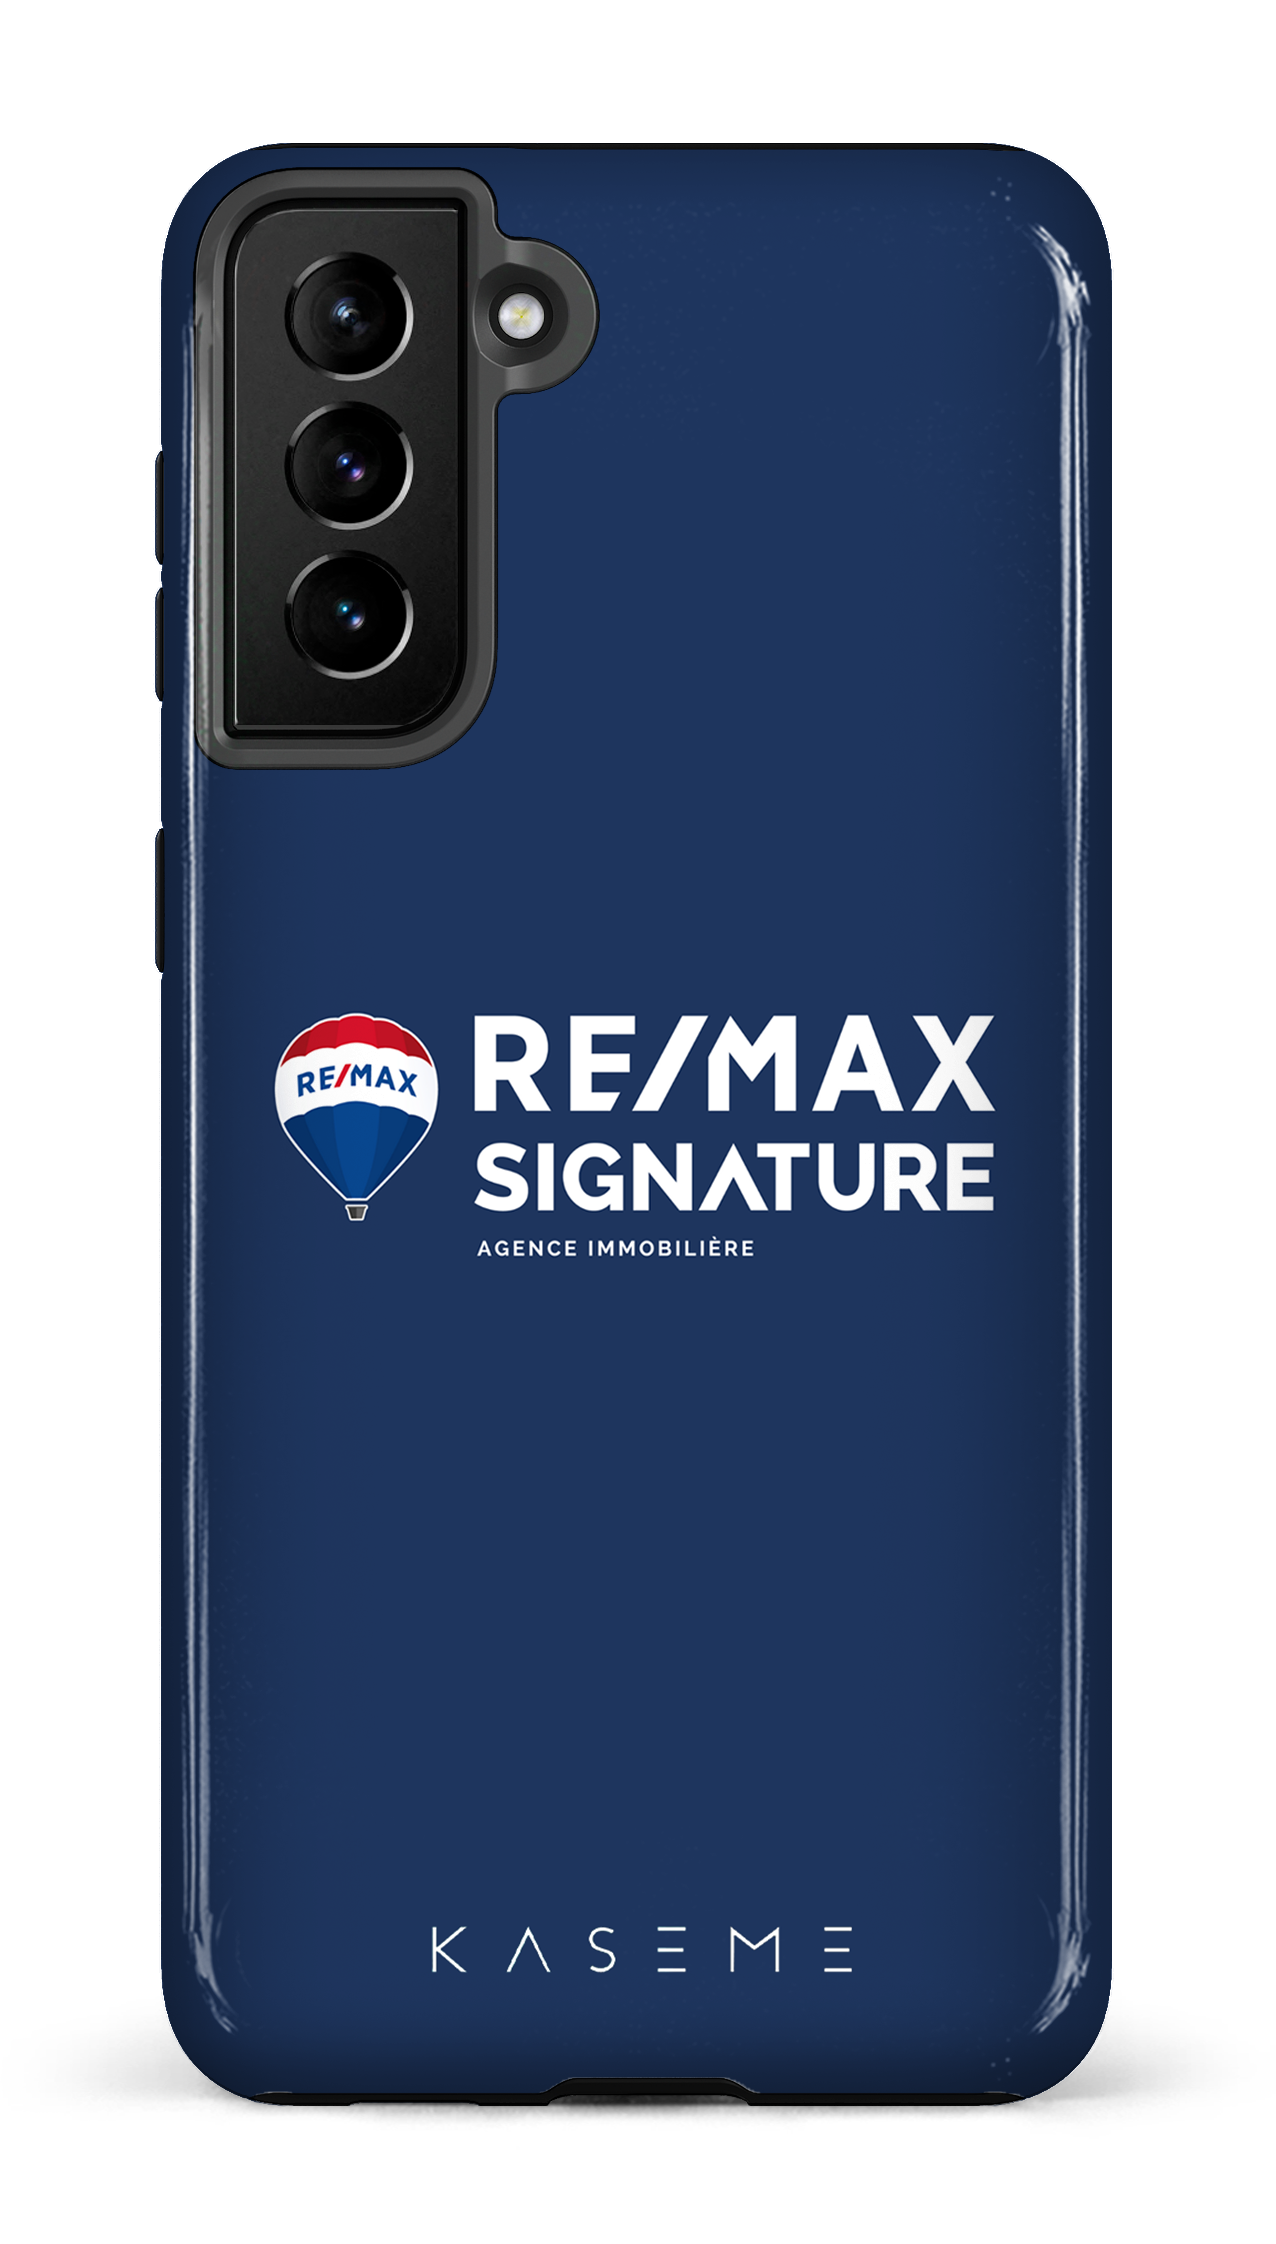 Remax Signature Bleu - Galaxy S21 Plus